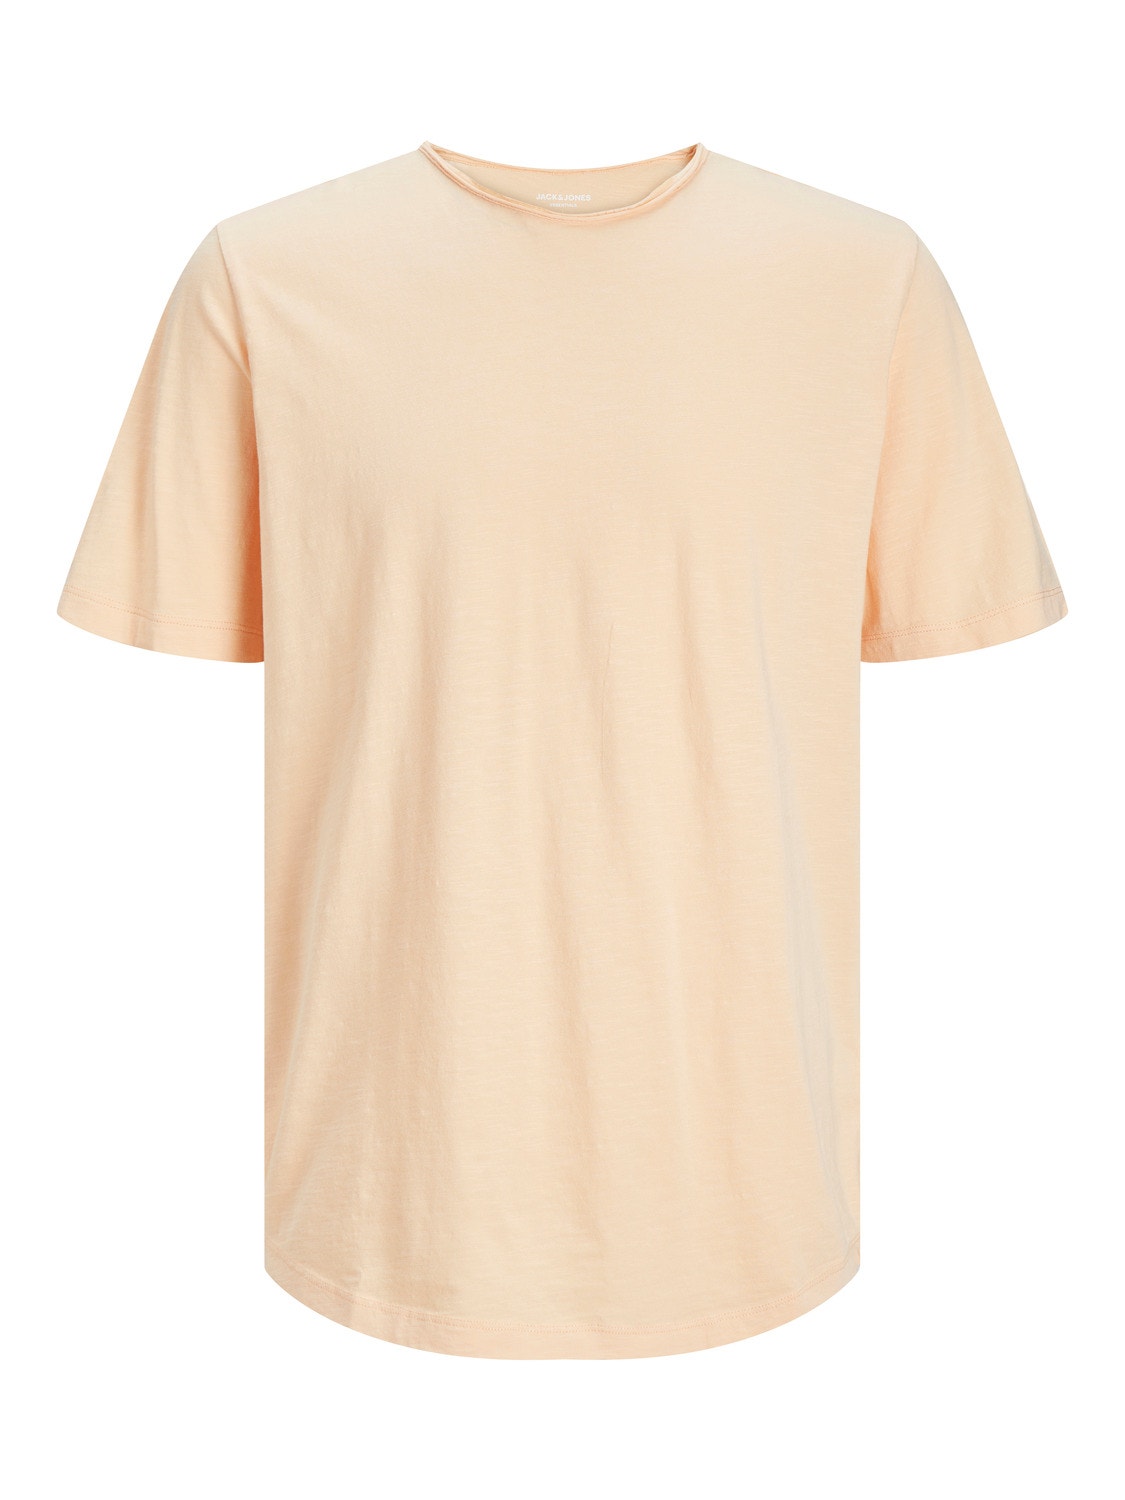 Jack & Jones Einfarbig Rundhals T-shirt -Apricot Ice  - 12182498